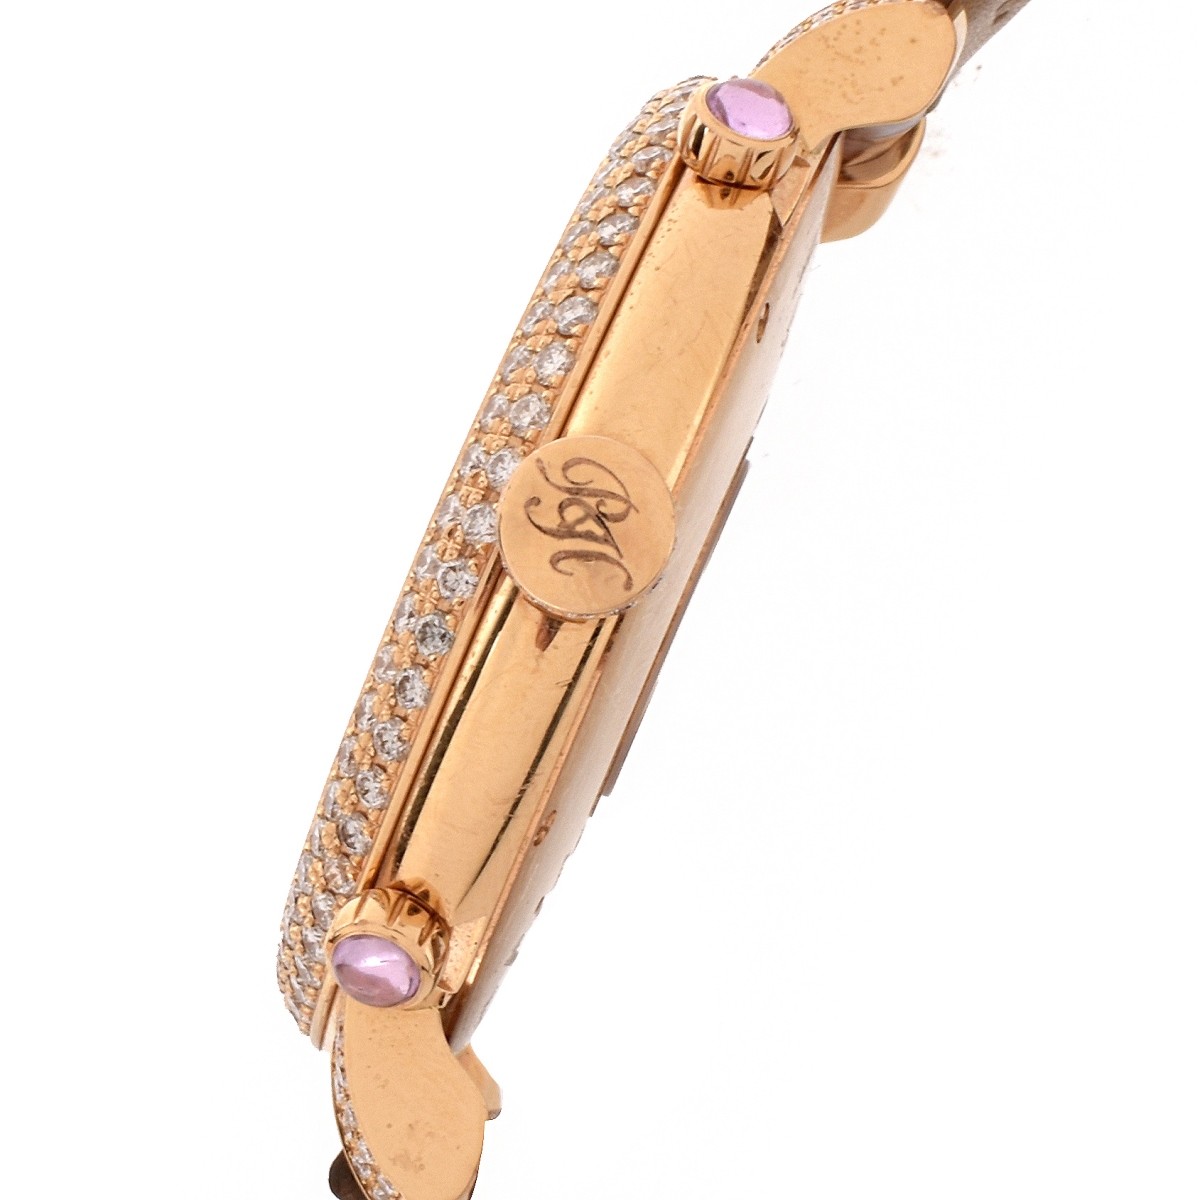 Paris Hilton Diamond and 18K Watch